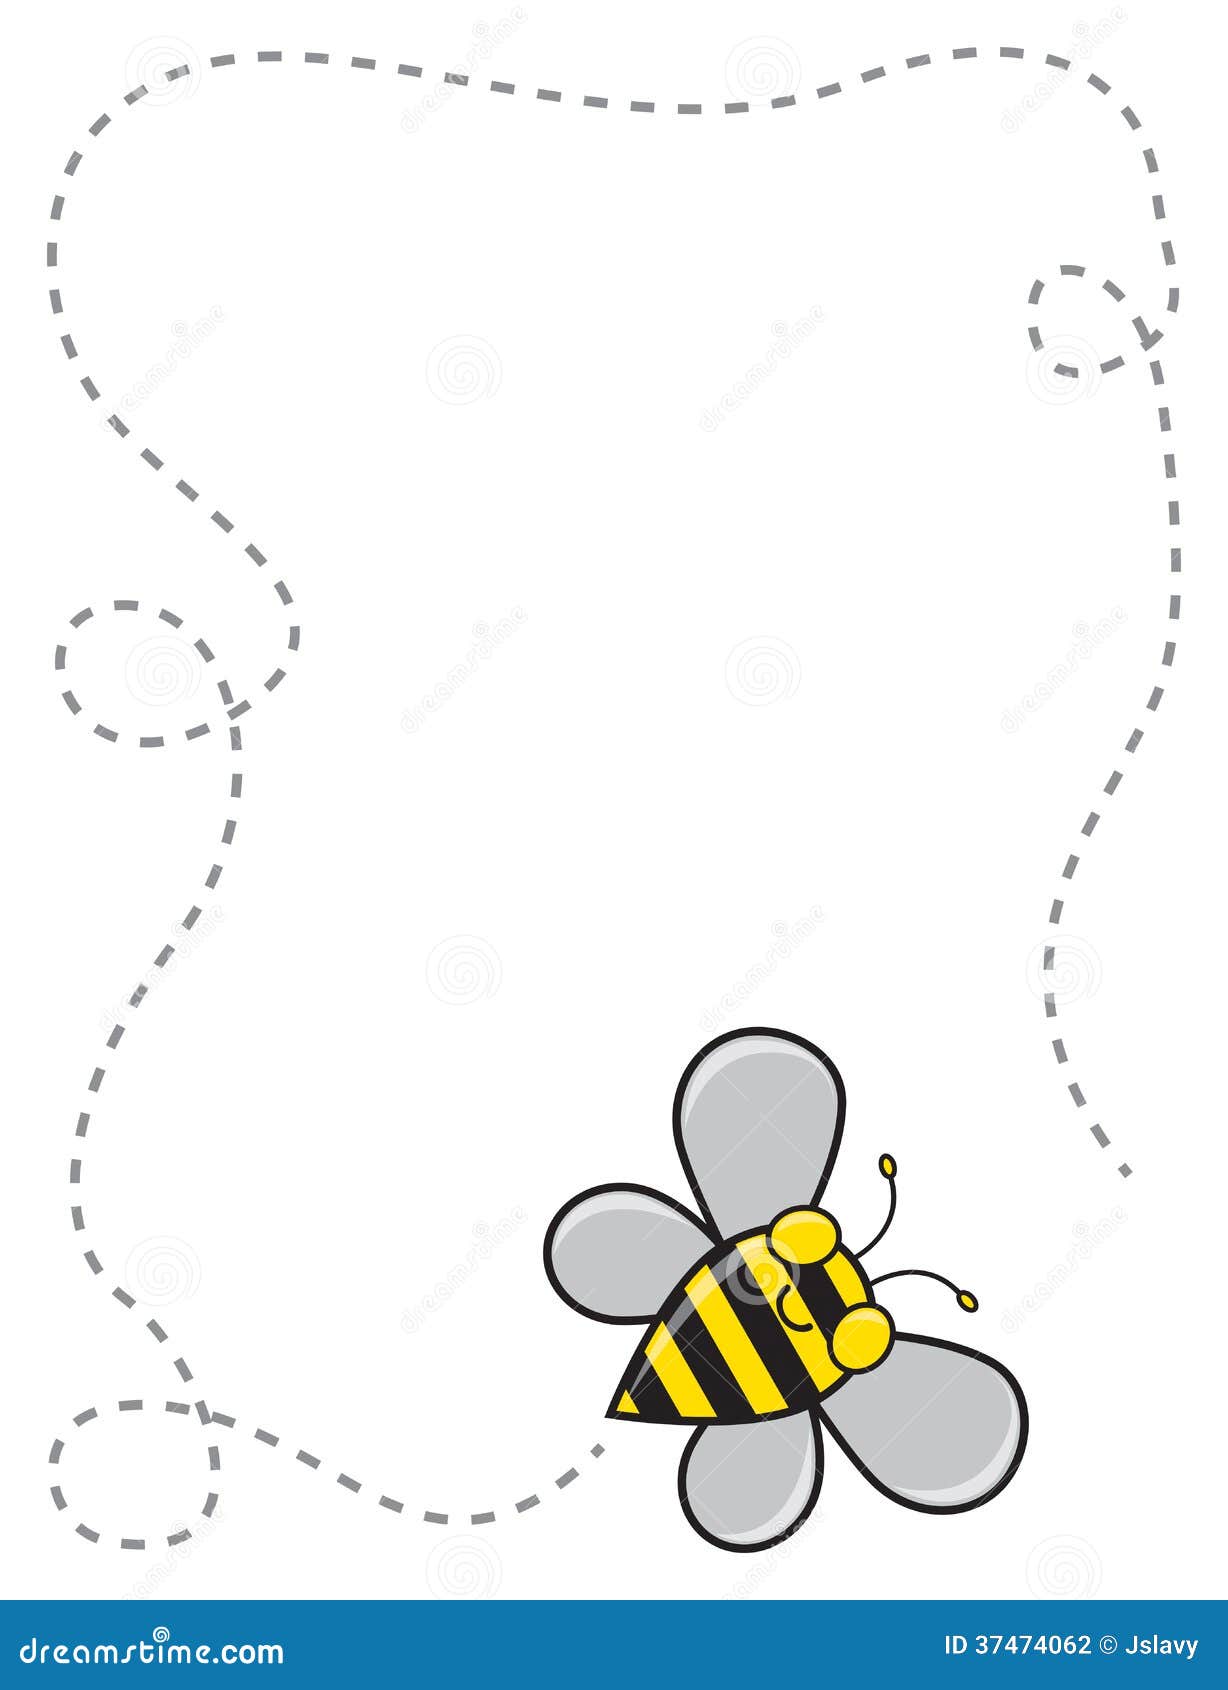 bumble bee clip art border - photo #14